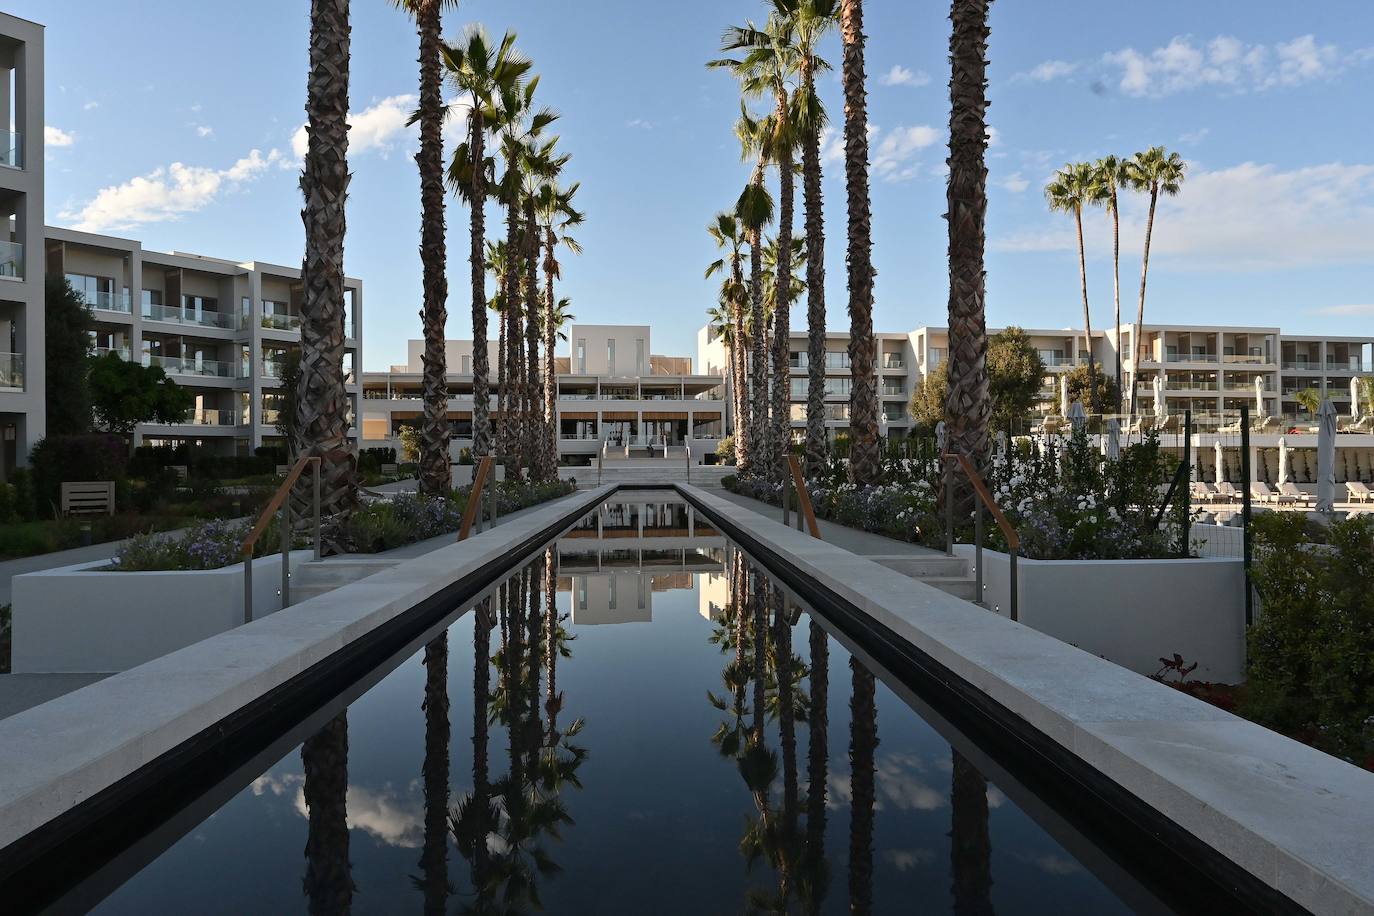 La cadena hotelera, de origen griego, desembarca así en el municipio con un ambicioso proyecto, en primera línea de playa, y con una oferta ambiciosa como resort de todo incluido gran lujo.